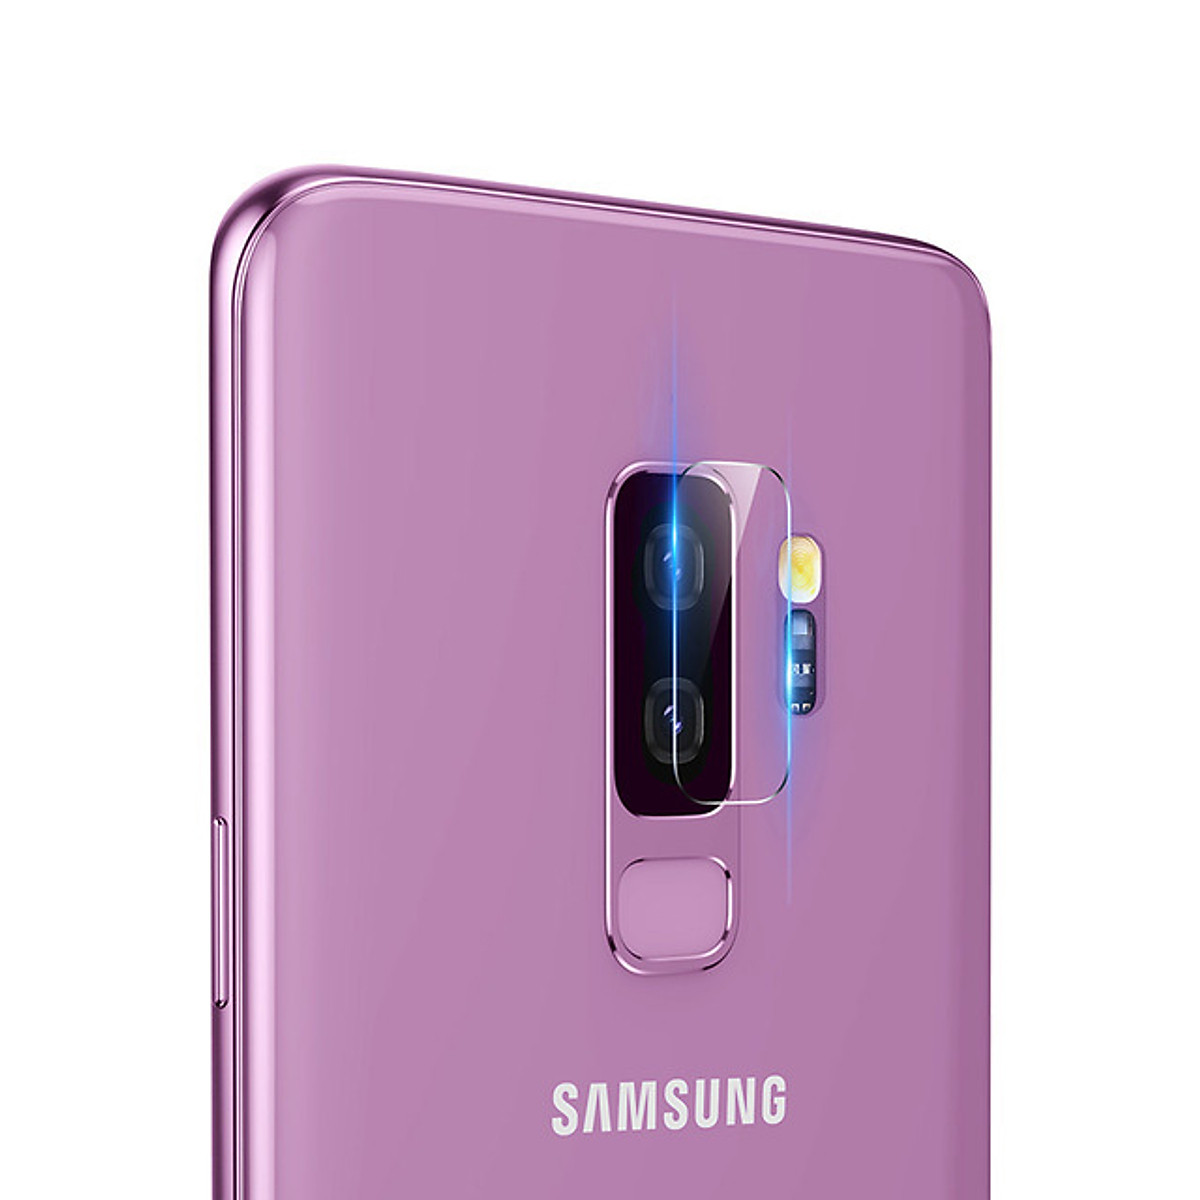 Miếng dán kính cường lực camera cho Samsung Galaxy S9 Plus hiệu Baseus